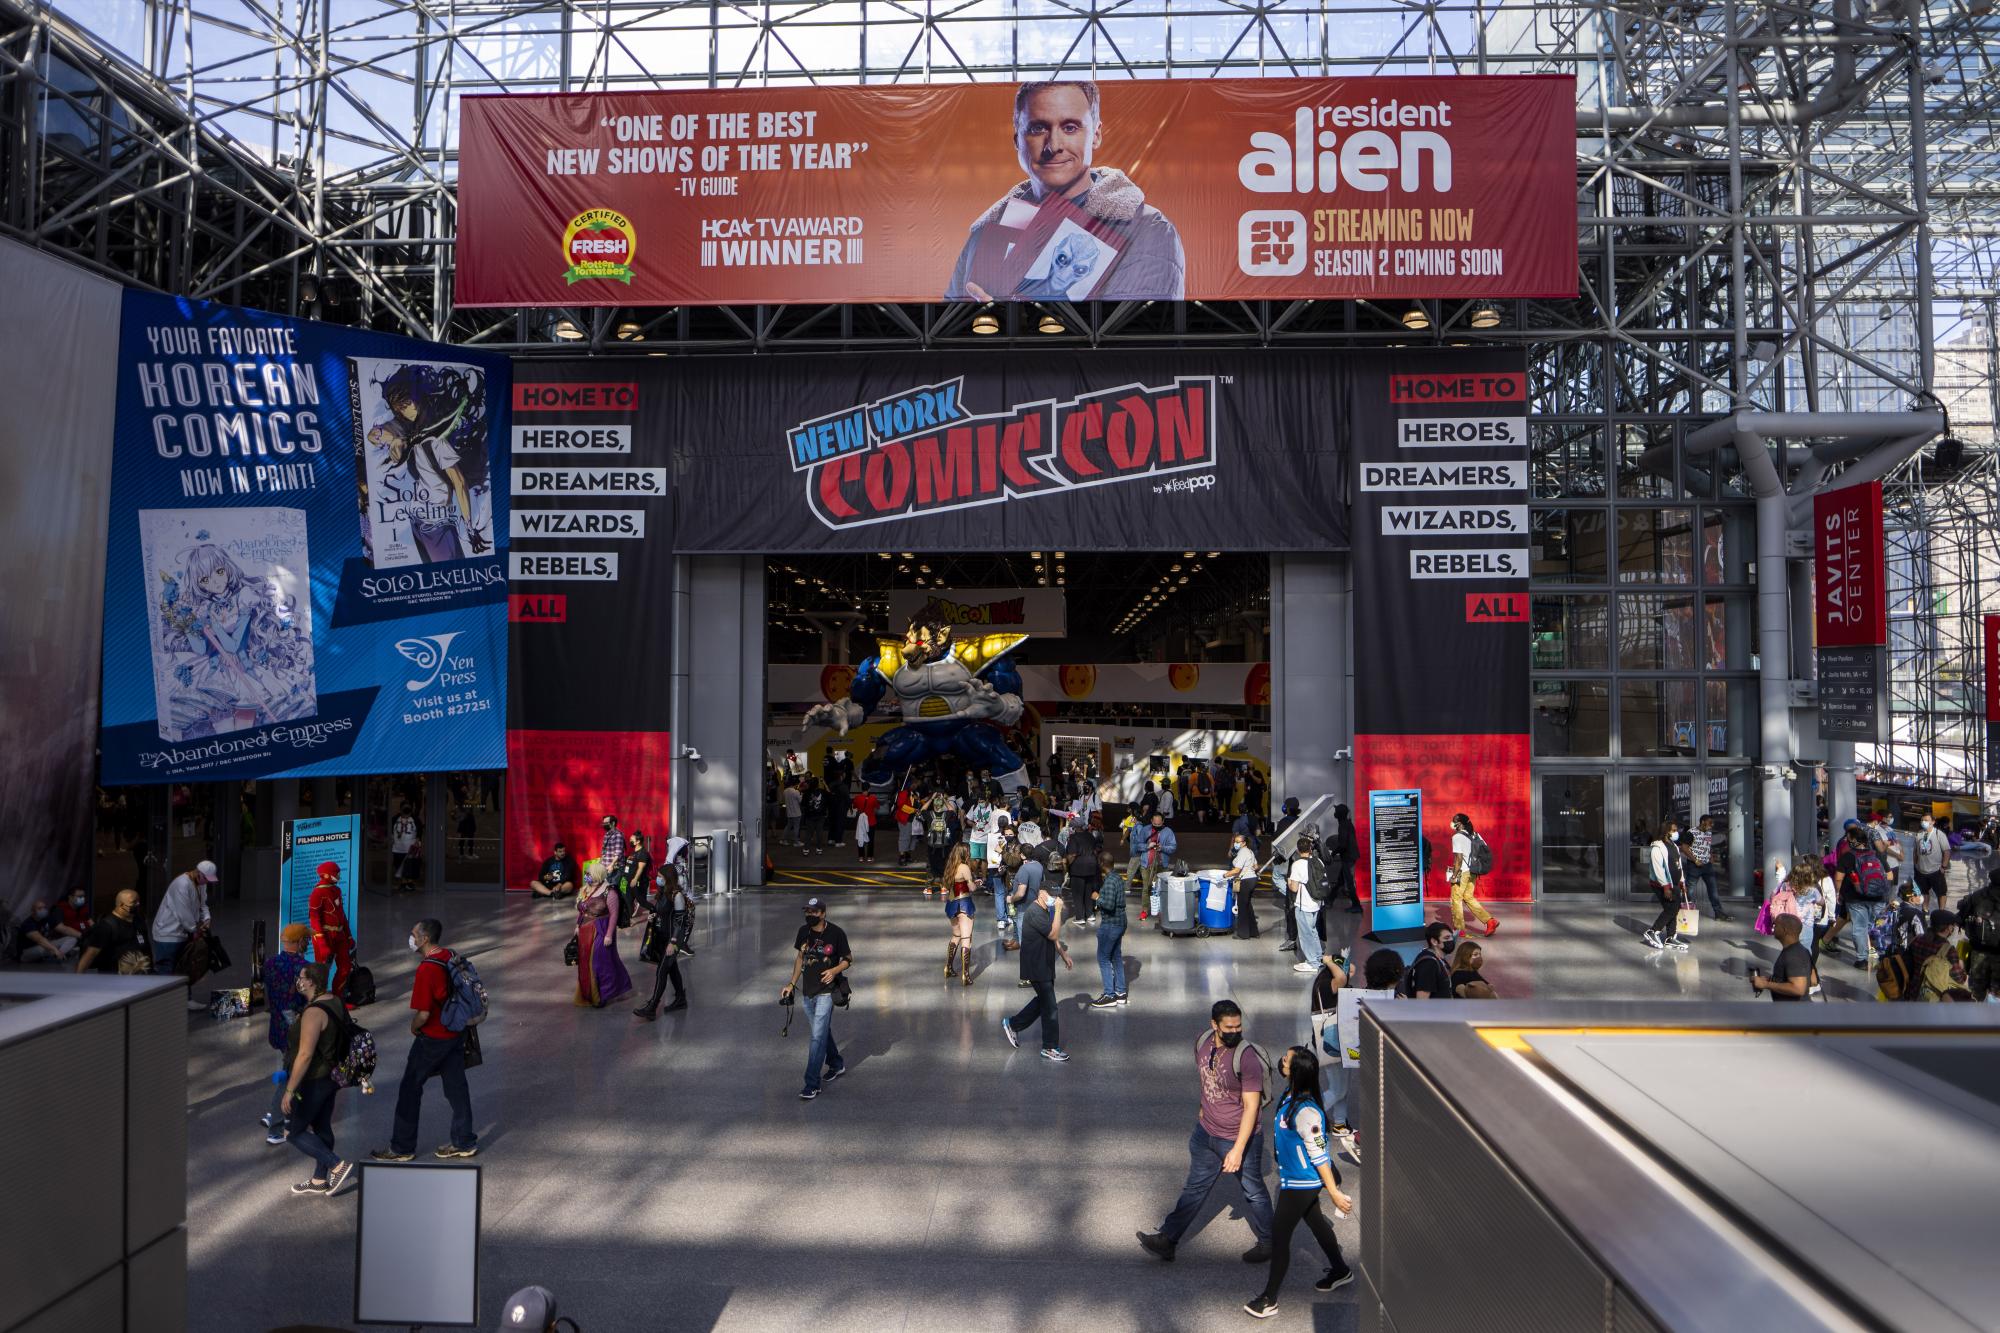 El piso del Centro de Convenciones Jacob K. Javits se ve durante la Comic Con de Nueva York el jueves 7 de octubre de 2021 en Nueva York. (Foto de Charles Sykes / Invision / AP)